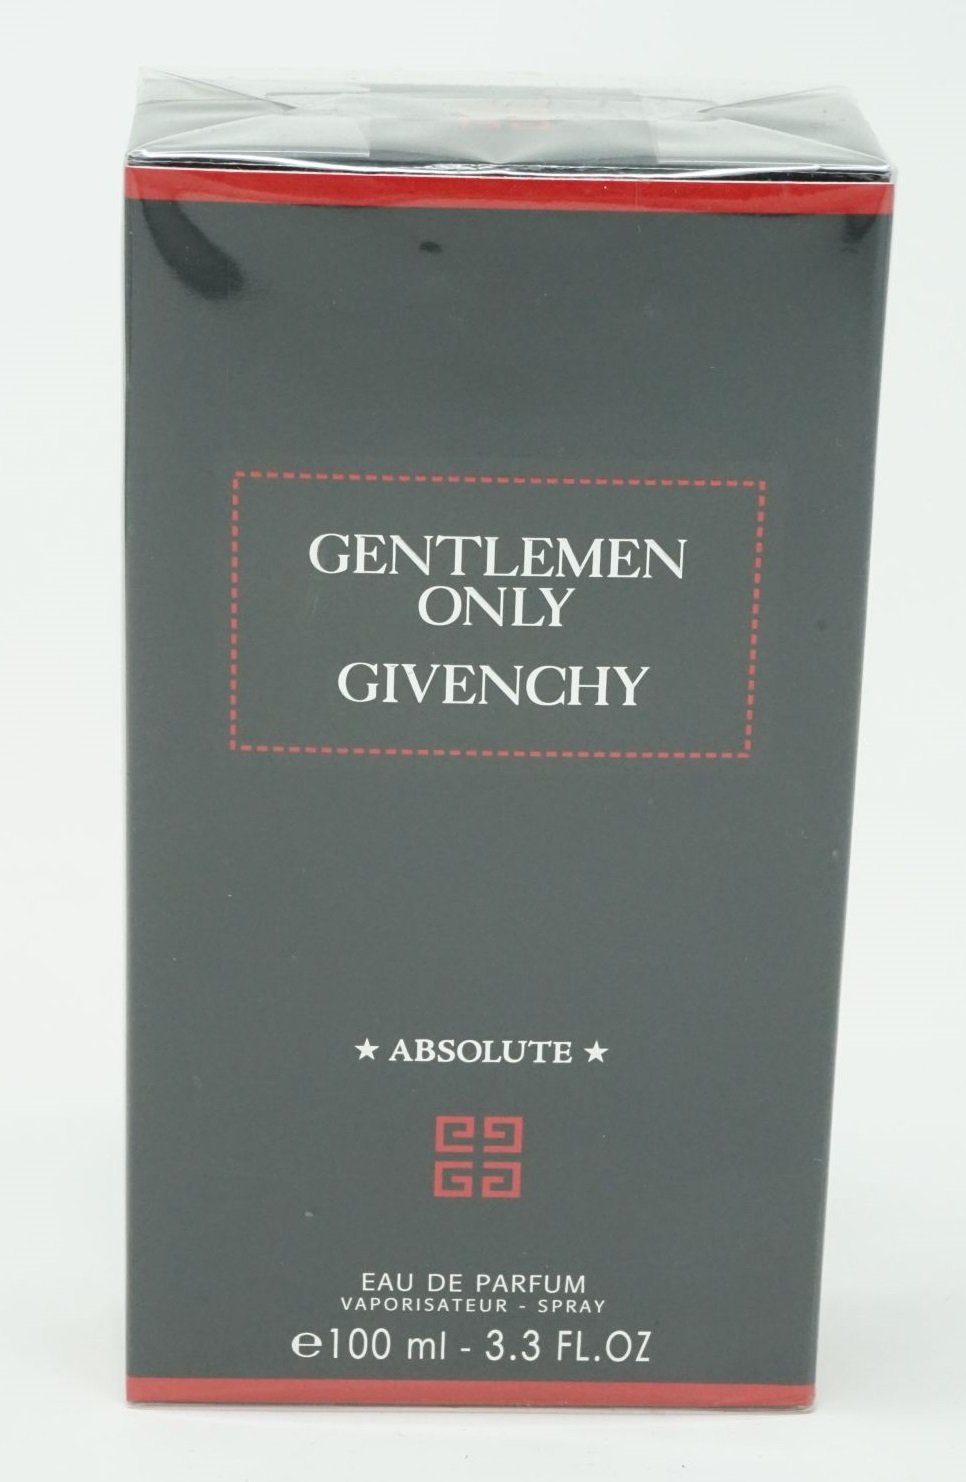 GIVENCHY Eau de Parfum Givenchy Gentleman Only Absolute Eau de Parfum 100 ml